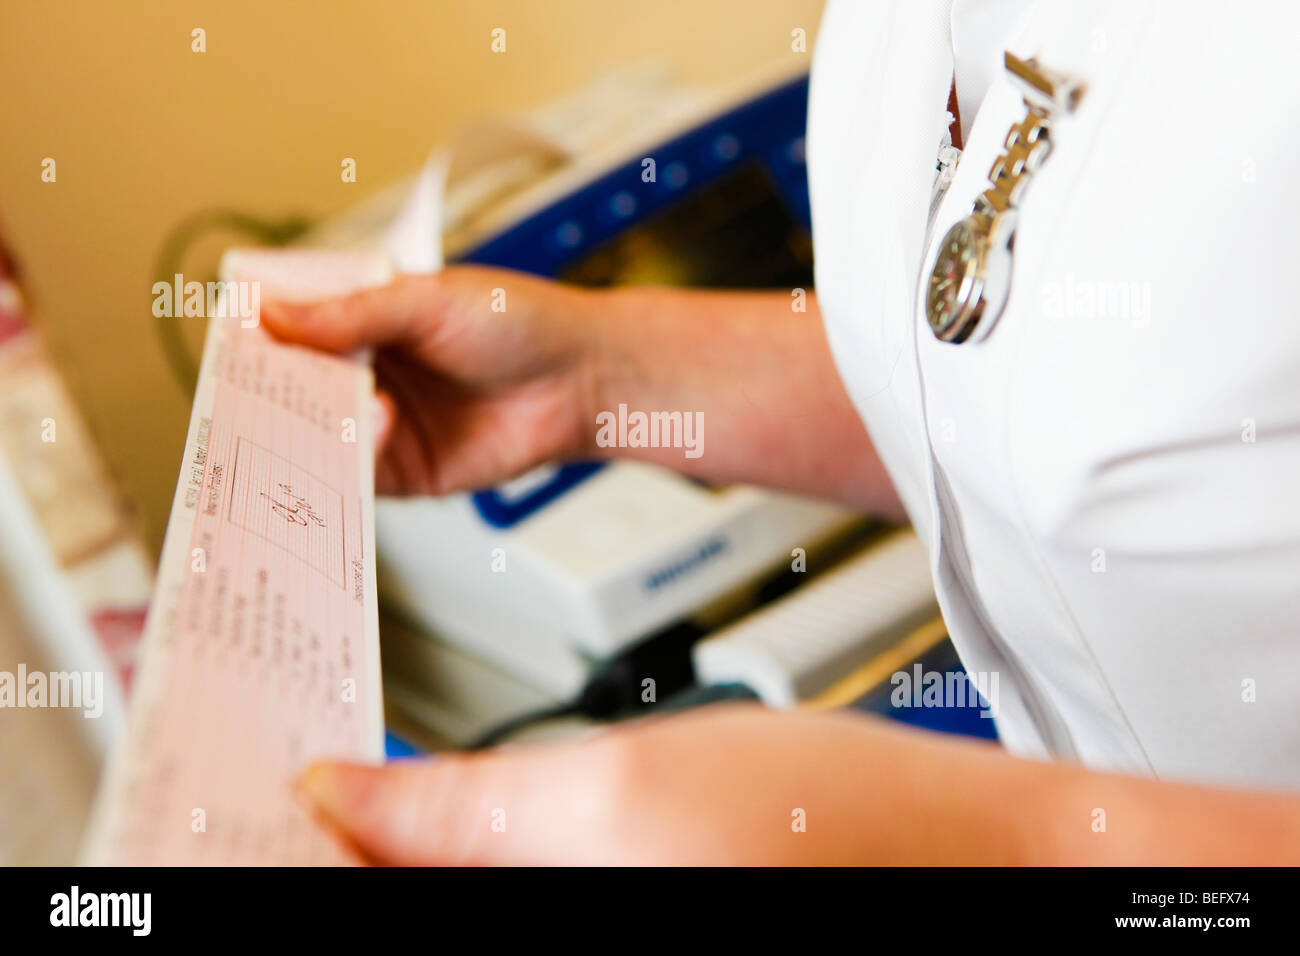 Krankenschwester, die einen Ausdruck von einem medizinischen Monitor lesen Stockfoto